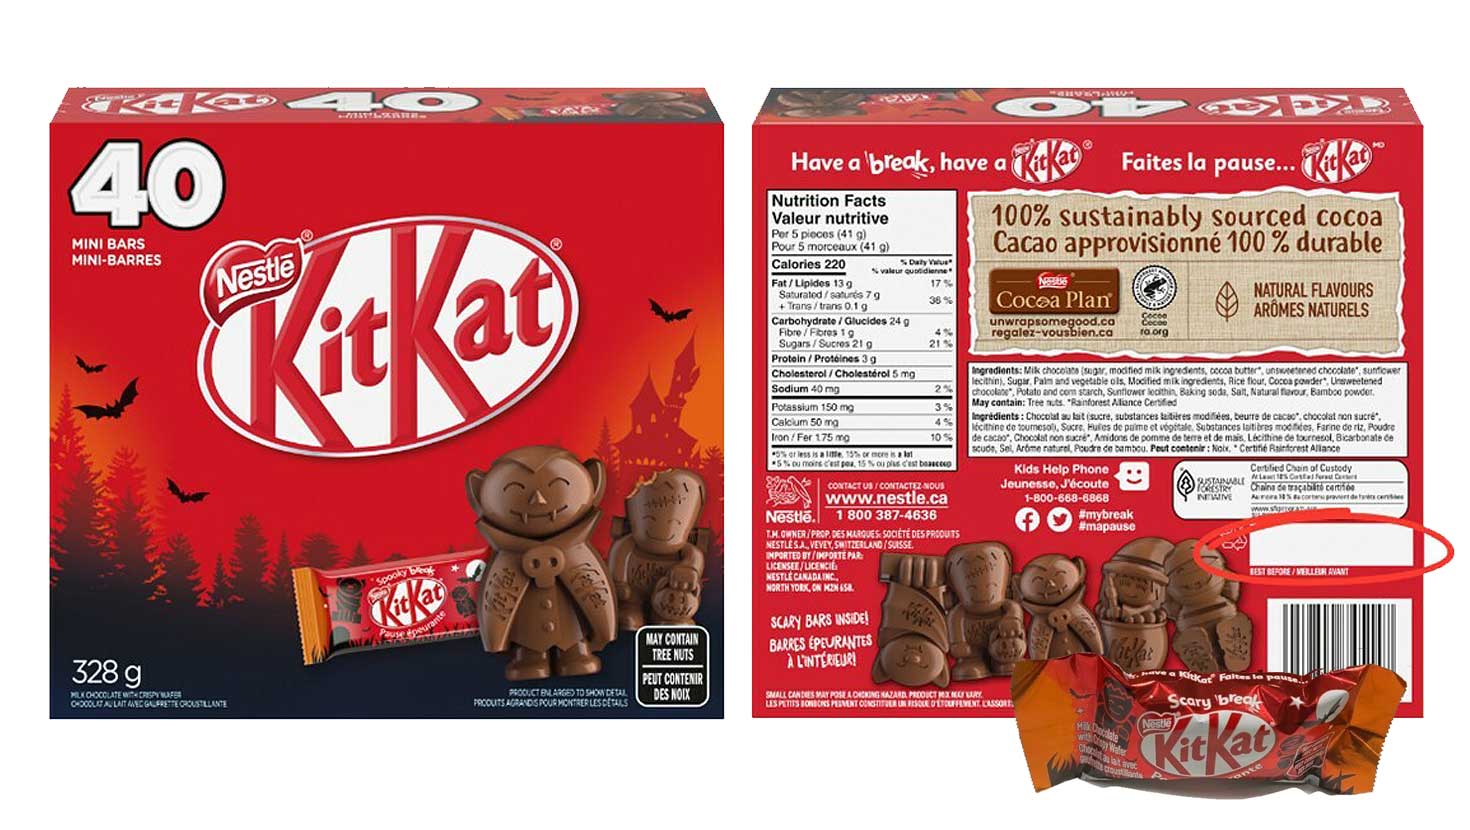 KitKat® Mini Moments 201g Bag